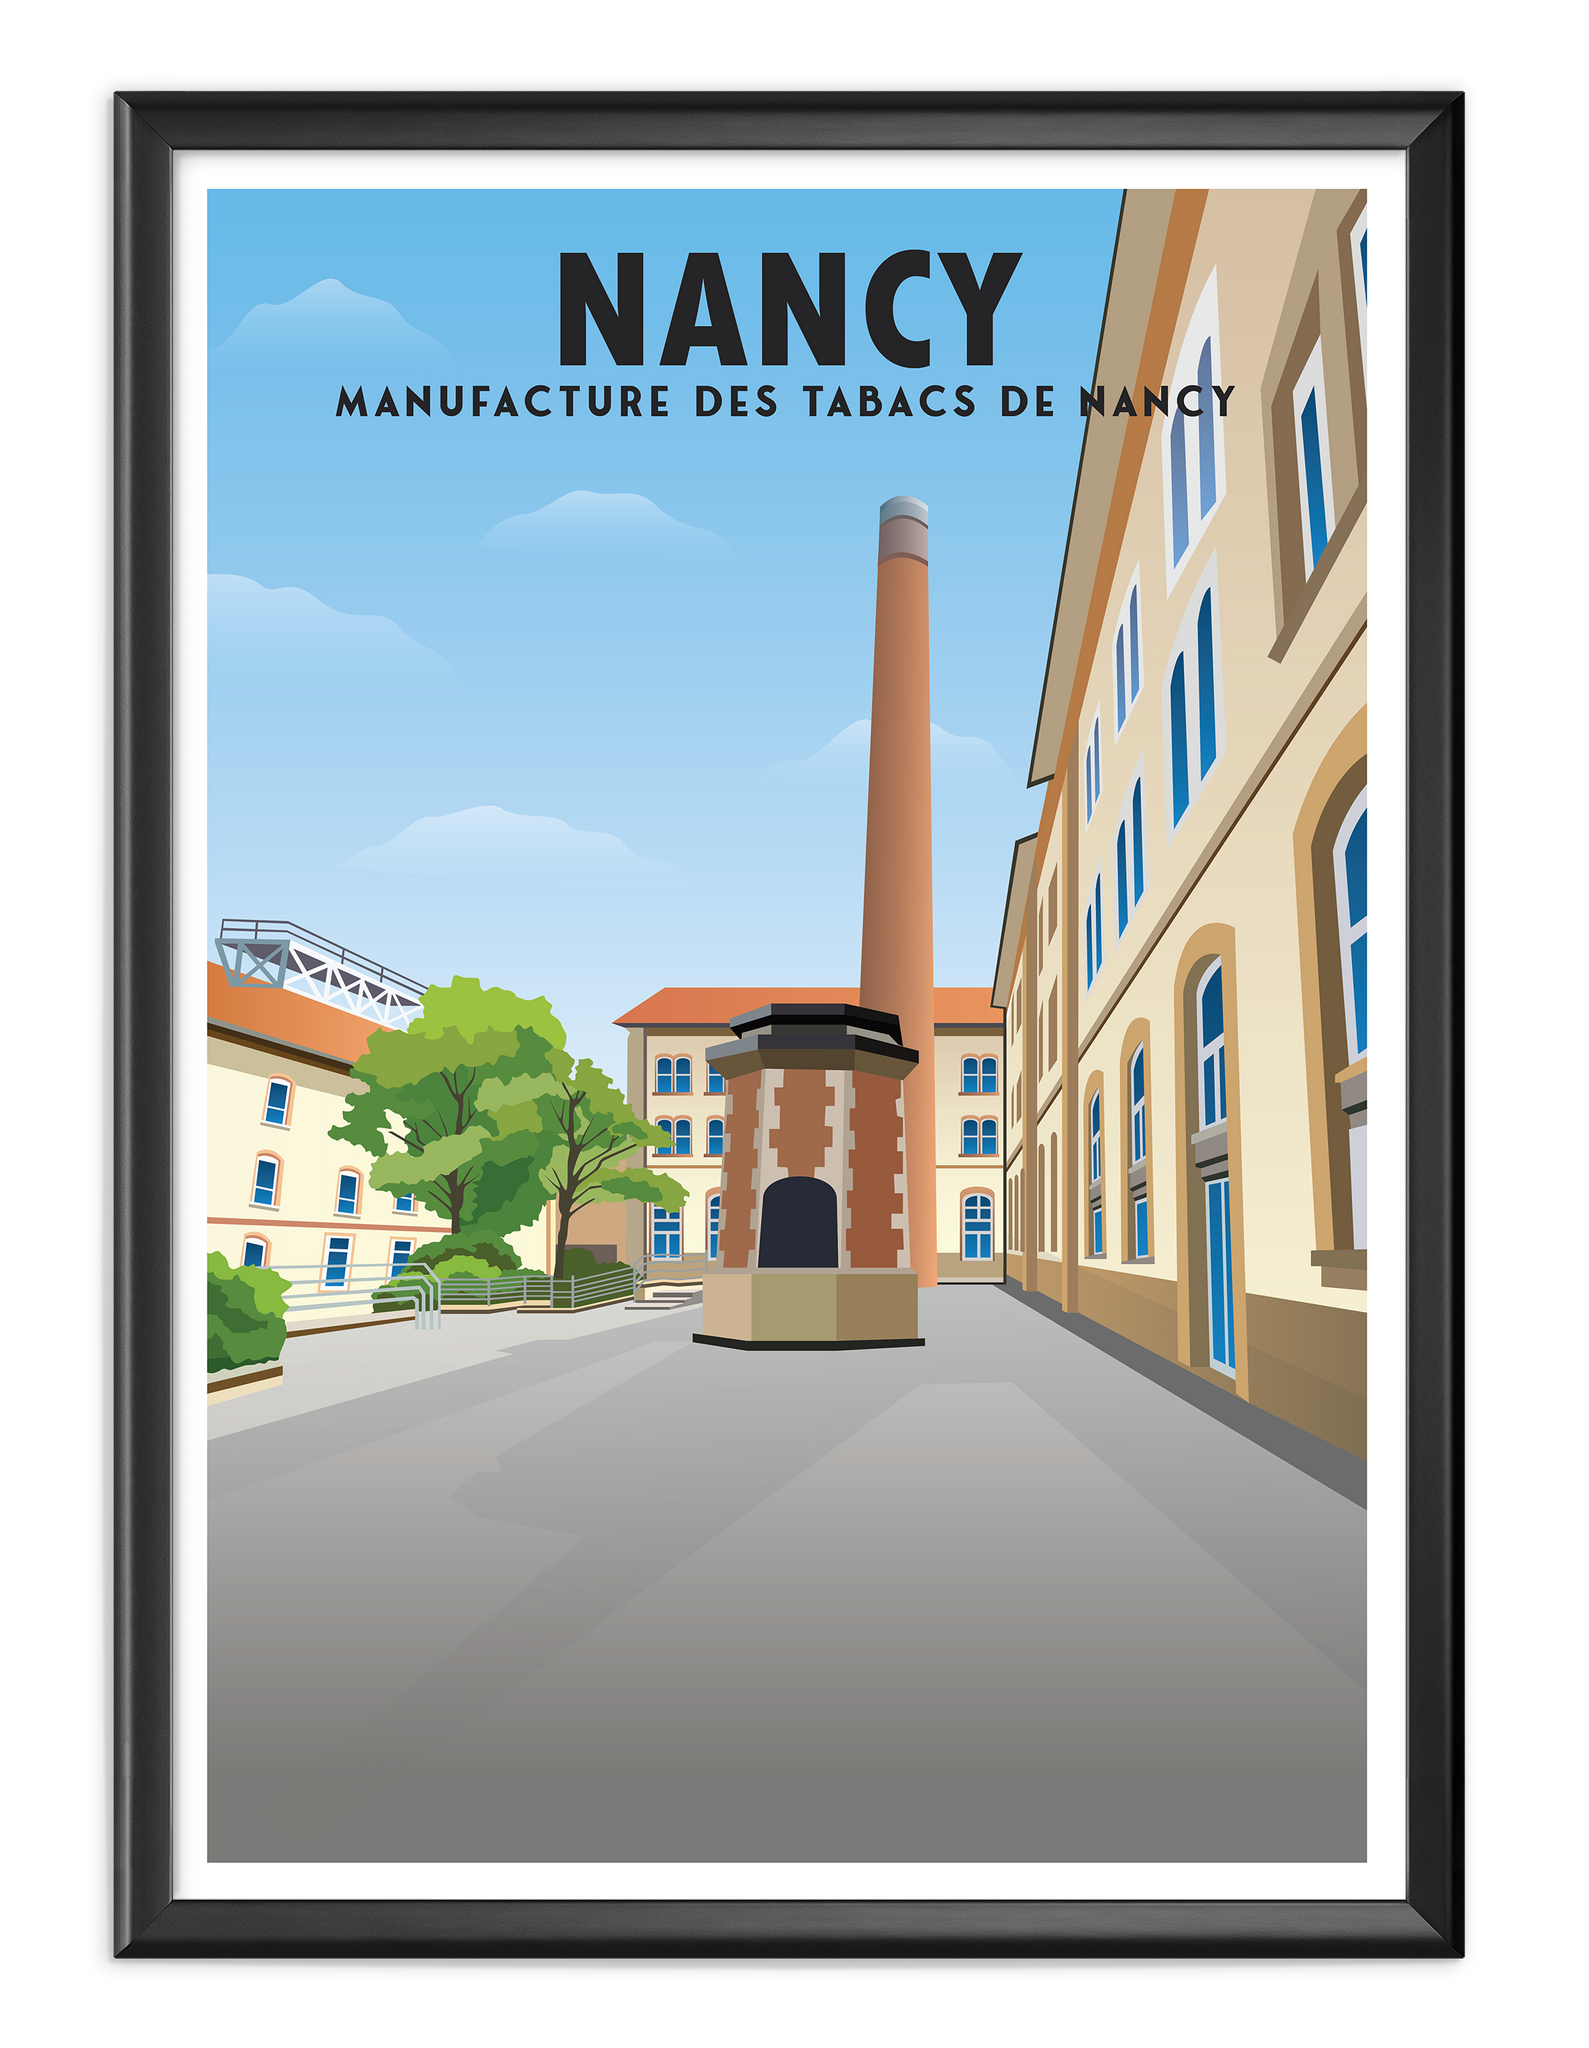 Les Manufactures des Tabacs de Nancy